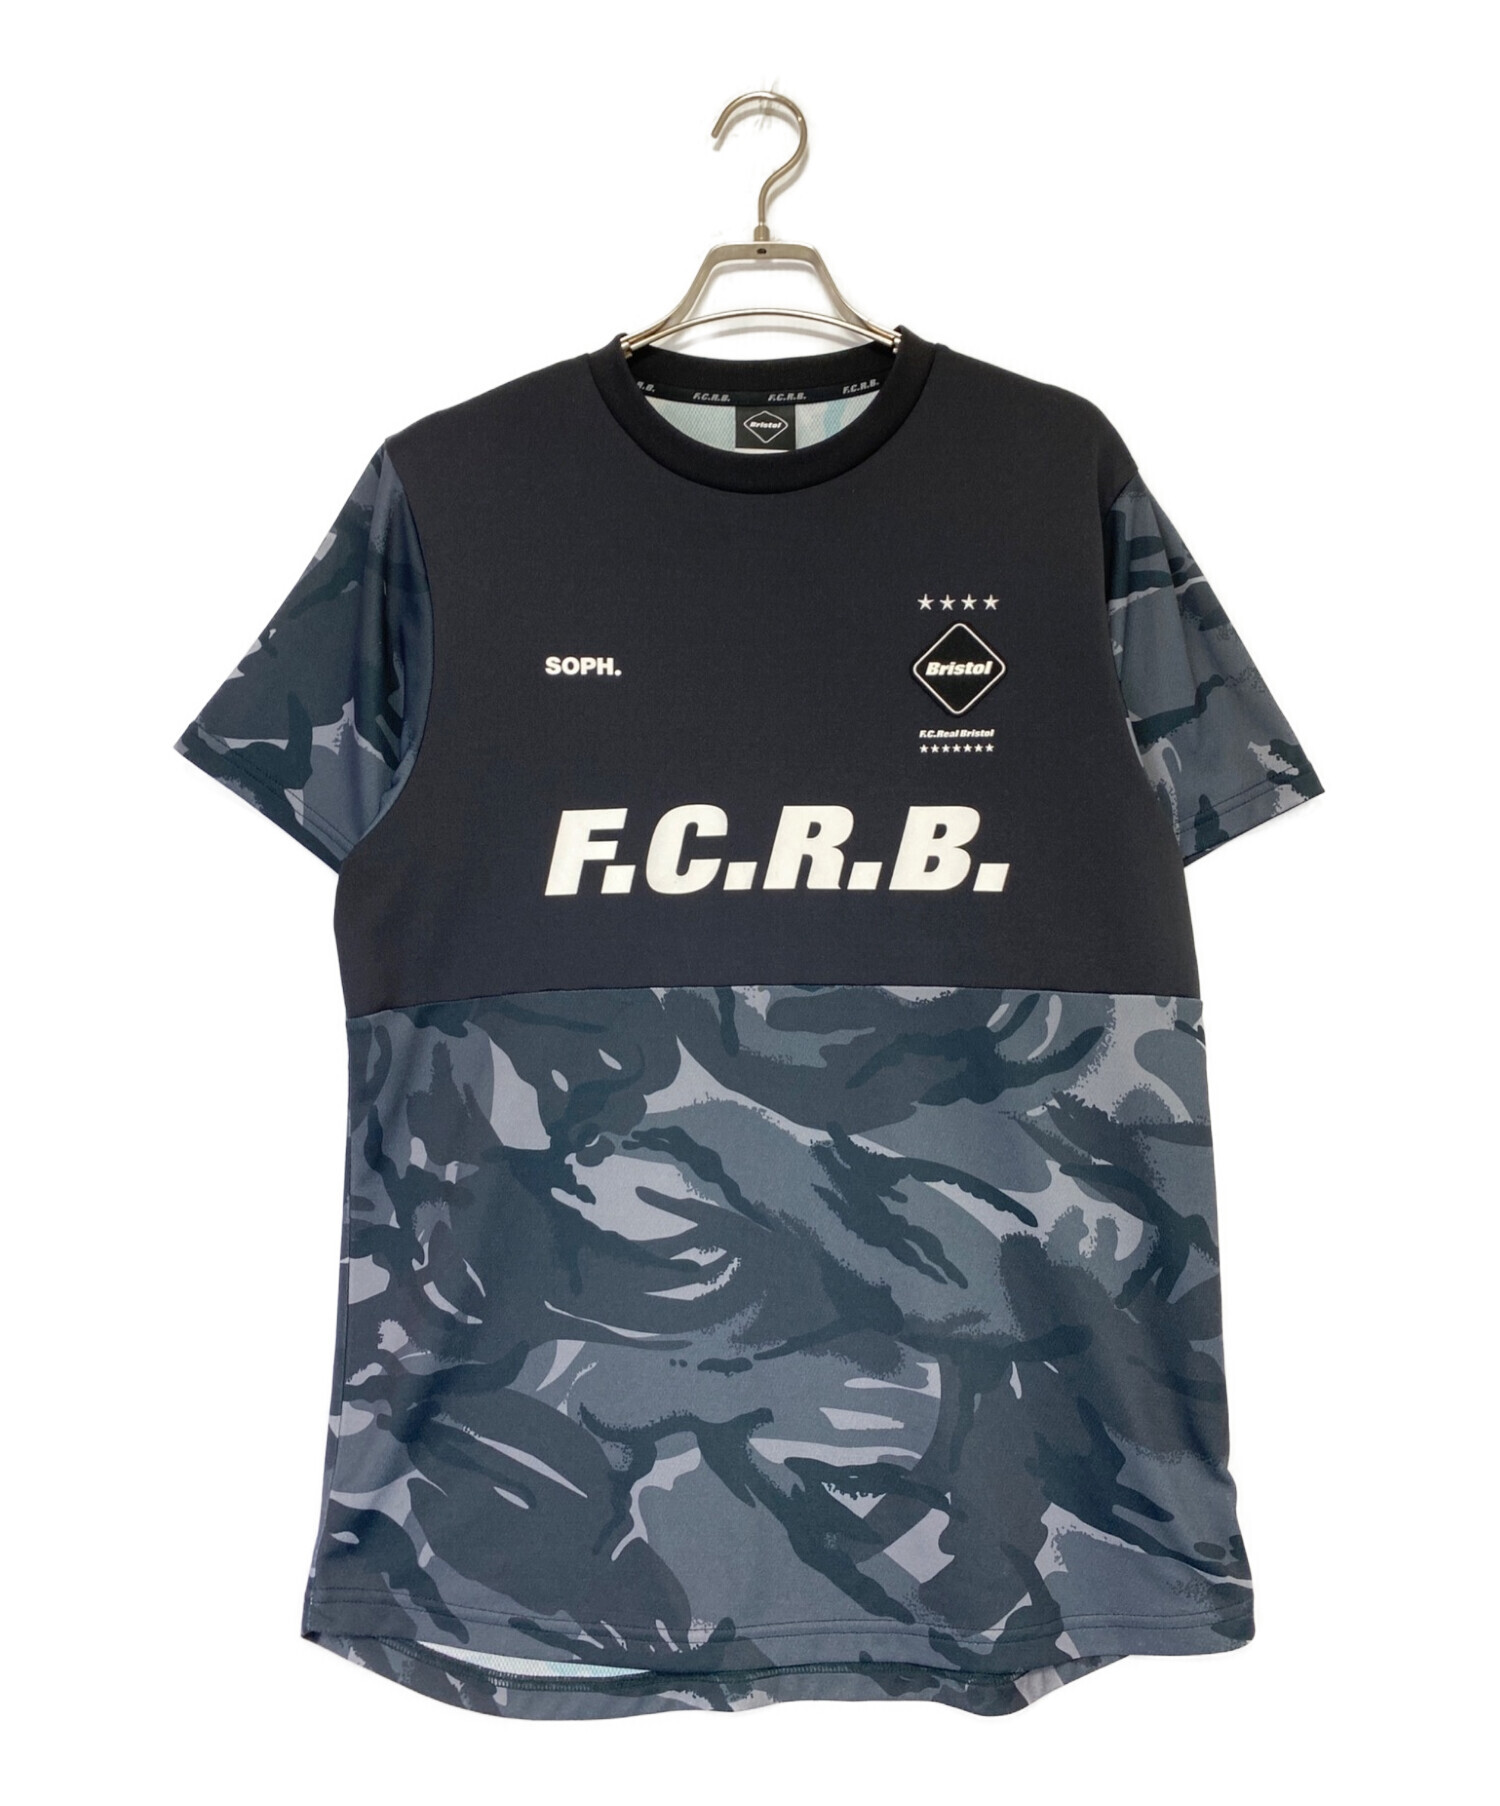 F.C.R.B 初期 00s ロゴ刺繍 フリースベスト テック グレー Mサイズ